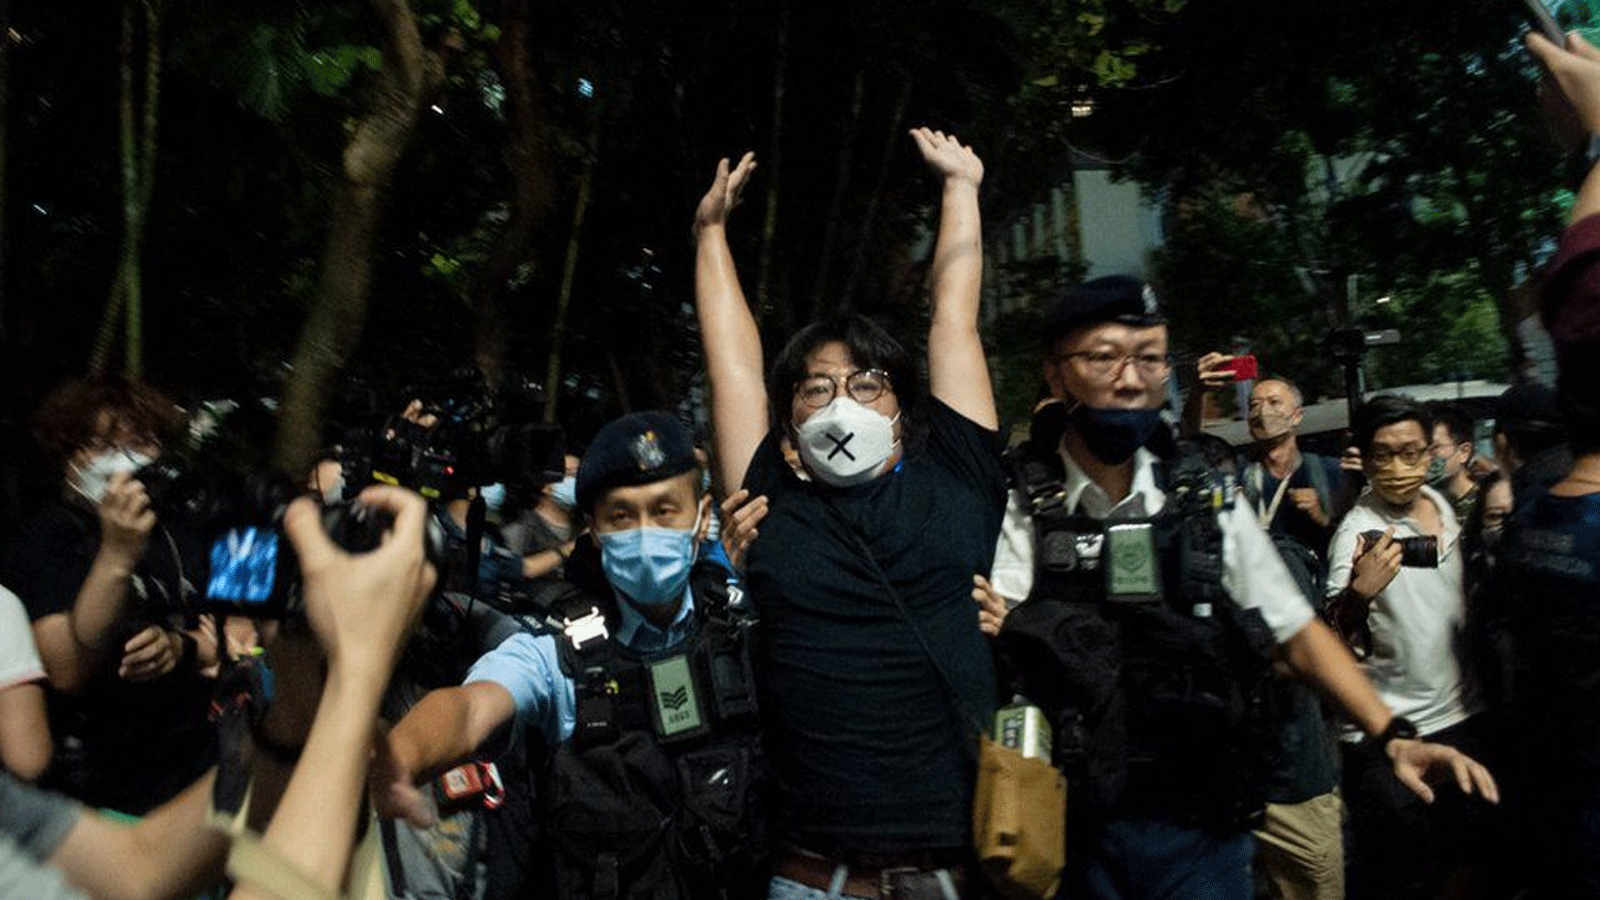 كان هناك وجود مكثف للشرطة في هونغ كونغ يوم السبت، مع اعتقال بعض النشطاء من قبل الشرطة